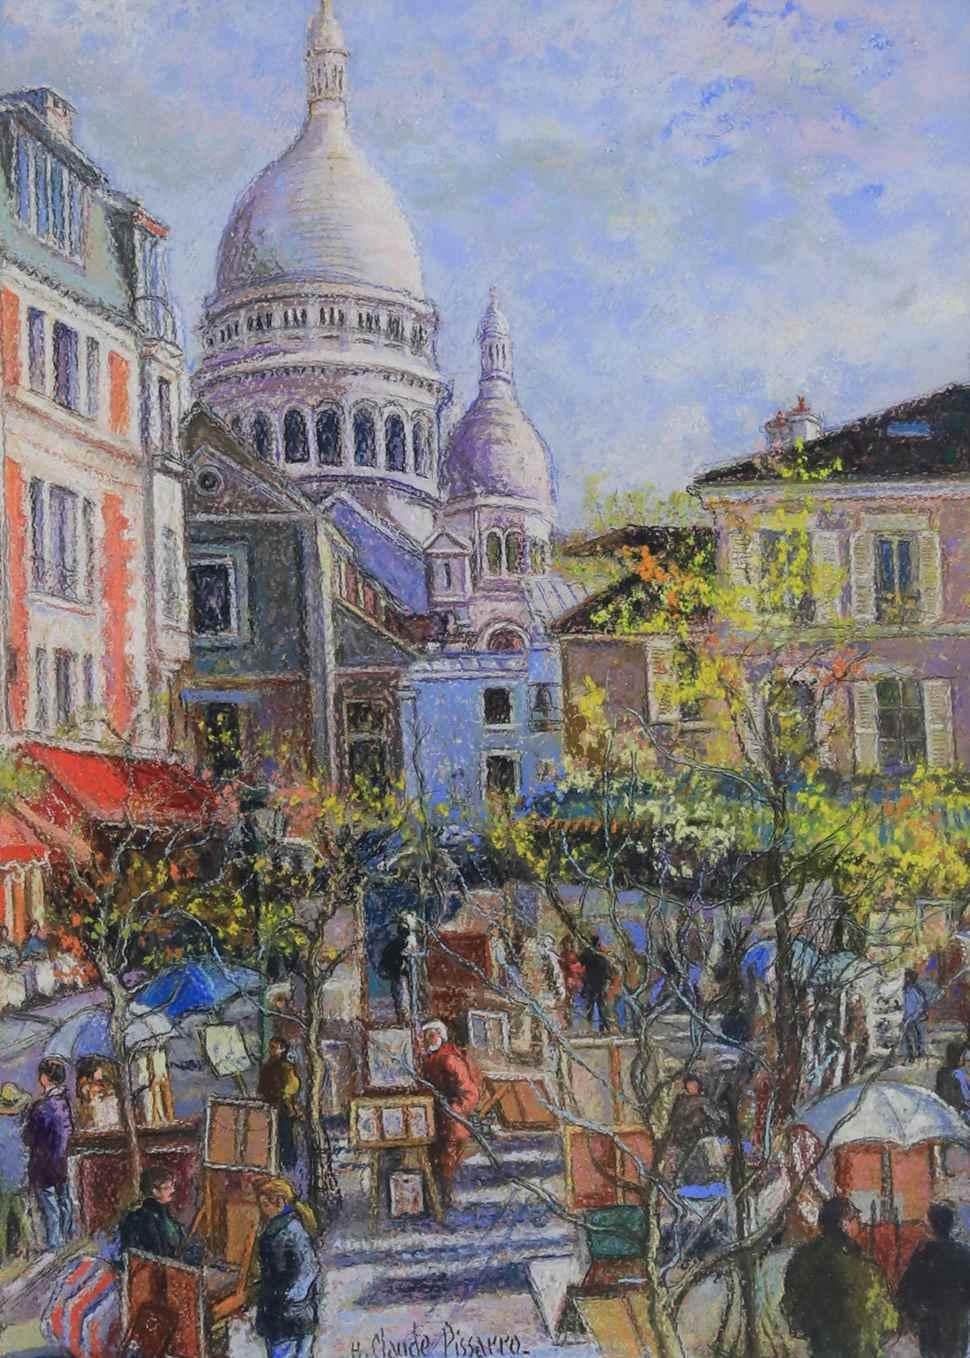 Les Parasols Blancs - Montmartre by H. Claude Pissarro - Pastel on Card